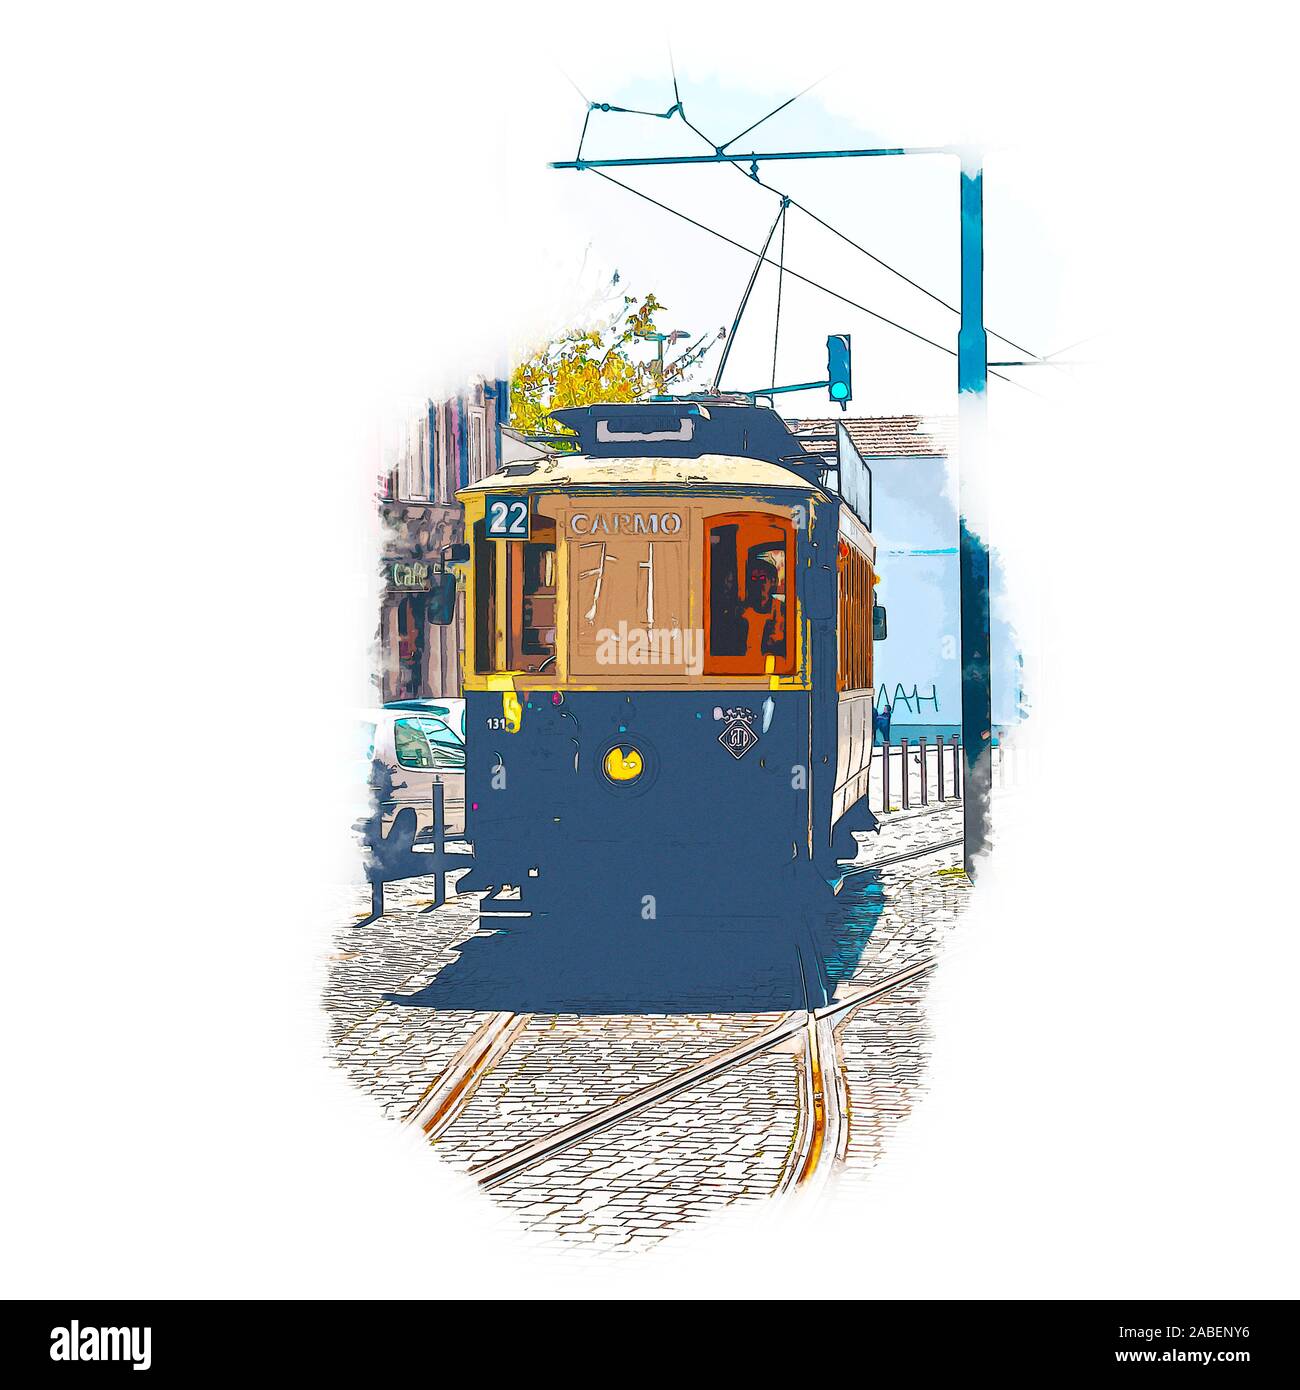 Amélioration de l'image numérique d'un style ancien tramway du patrimoine à la place Batalha (Praca da Batalha) dans se département de Porto, Portugal Banque D'Images